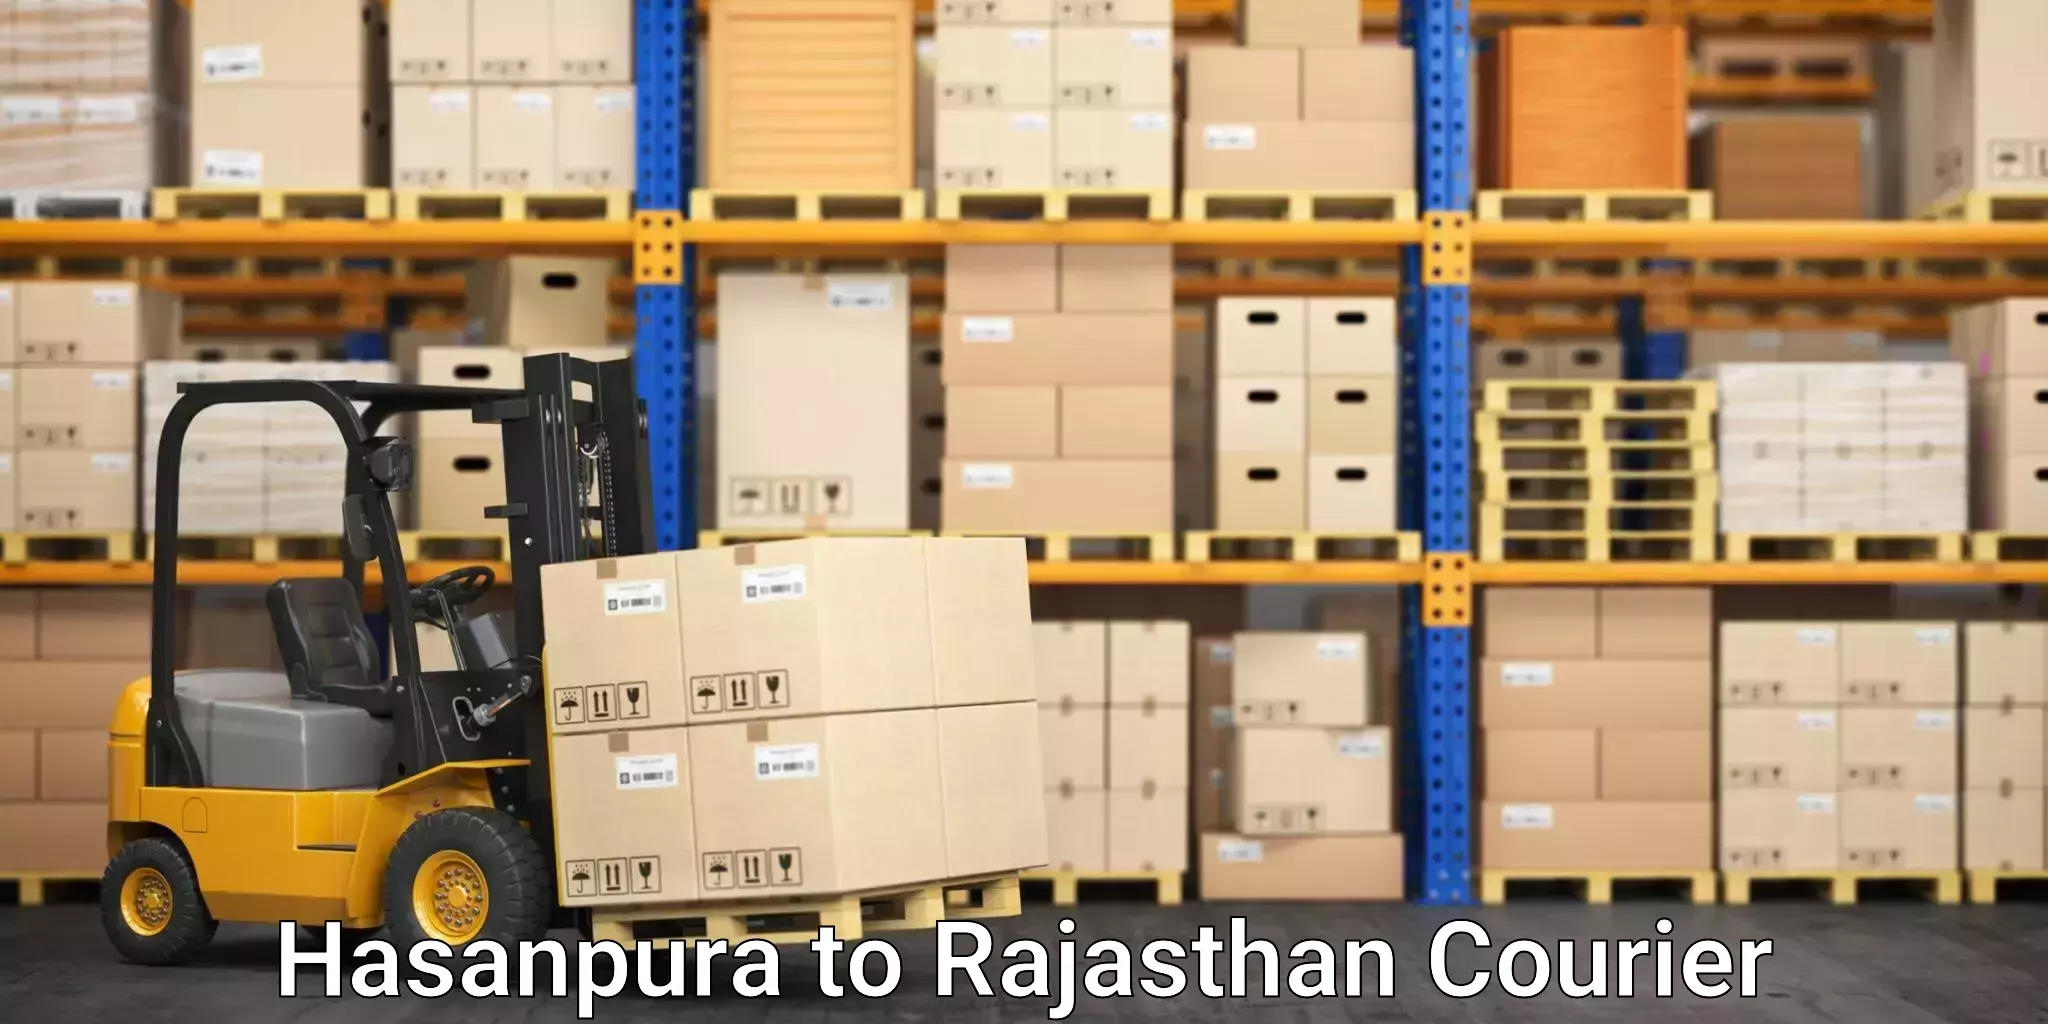 Furniture moving experts Hasanpura to Viratnagar